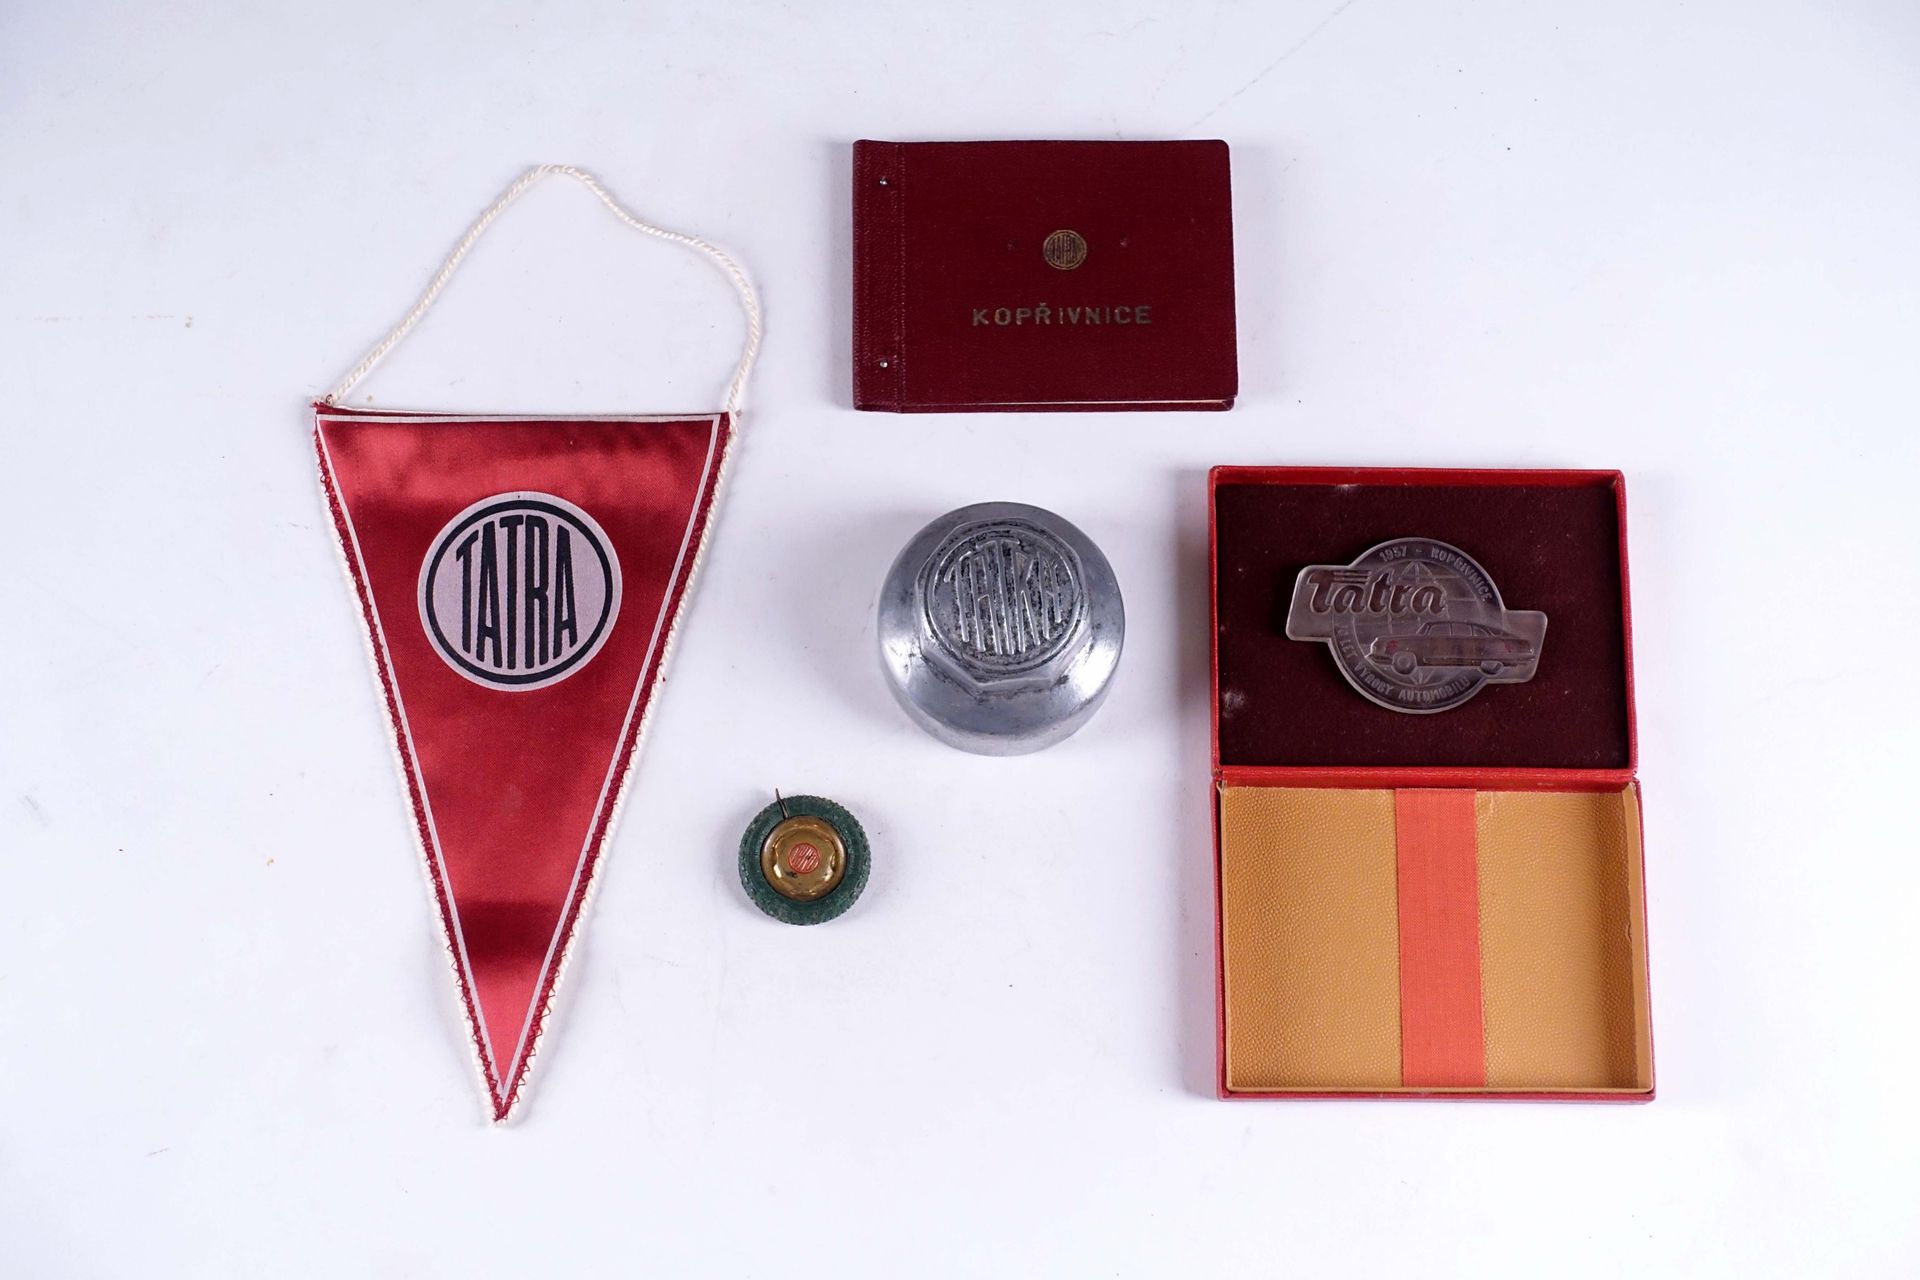 Tatra. 拍品：它展示了一个宣传盒（长：13厘米），内含一本 "Koprivnice "相册，并附有压模玻璃浮雕，日期为1957年，一个钥匙圈，一个铝制轮毂&hellip;